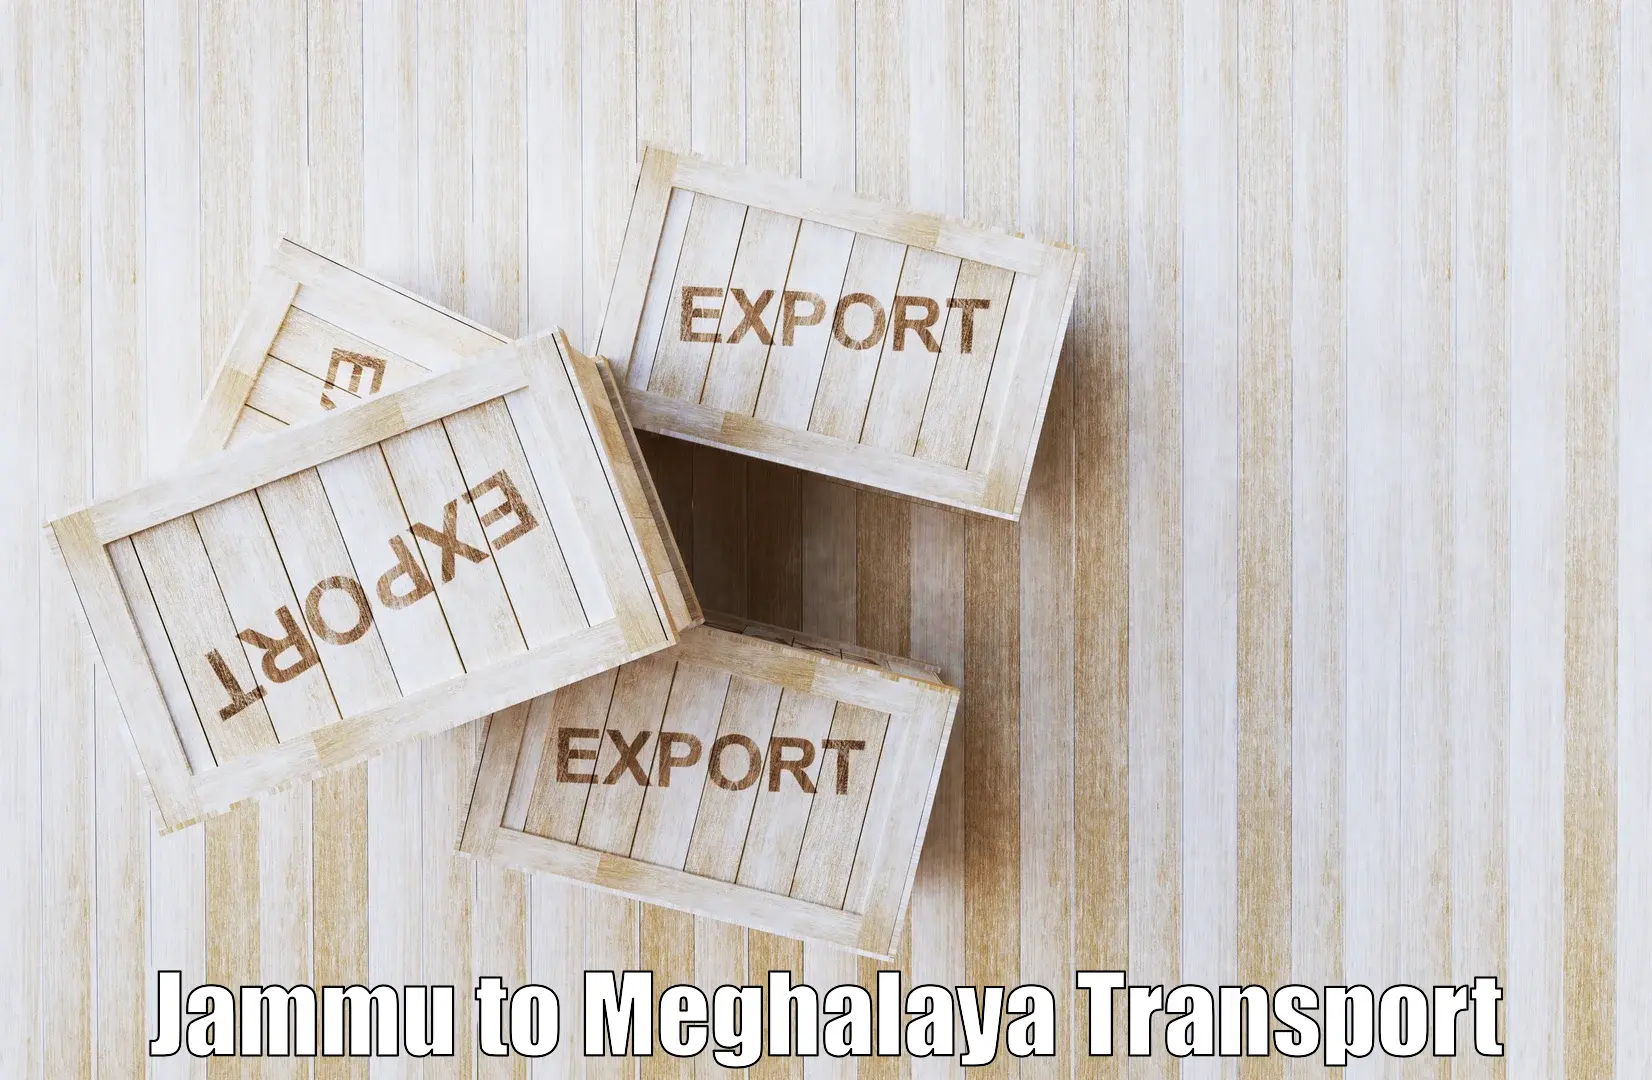 Commercial transport service Jammu to Meghalaya